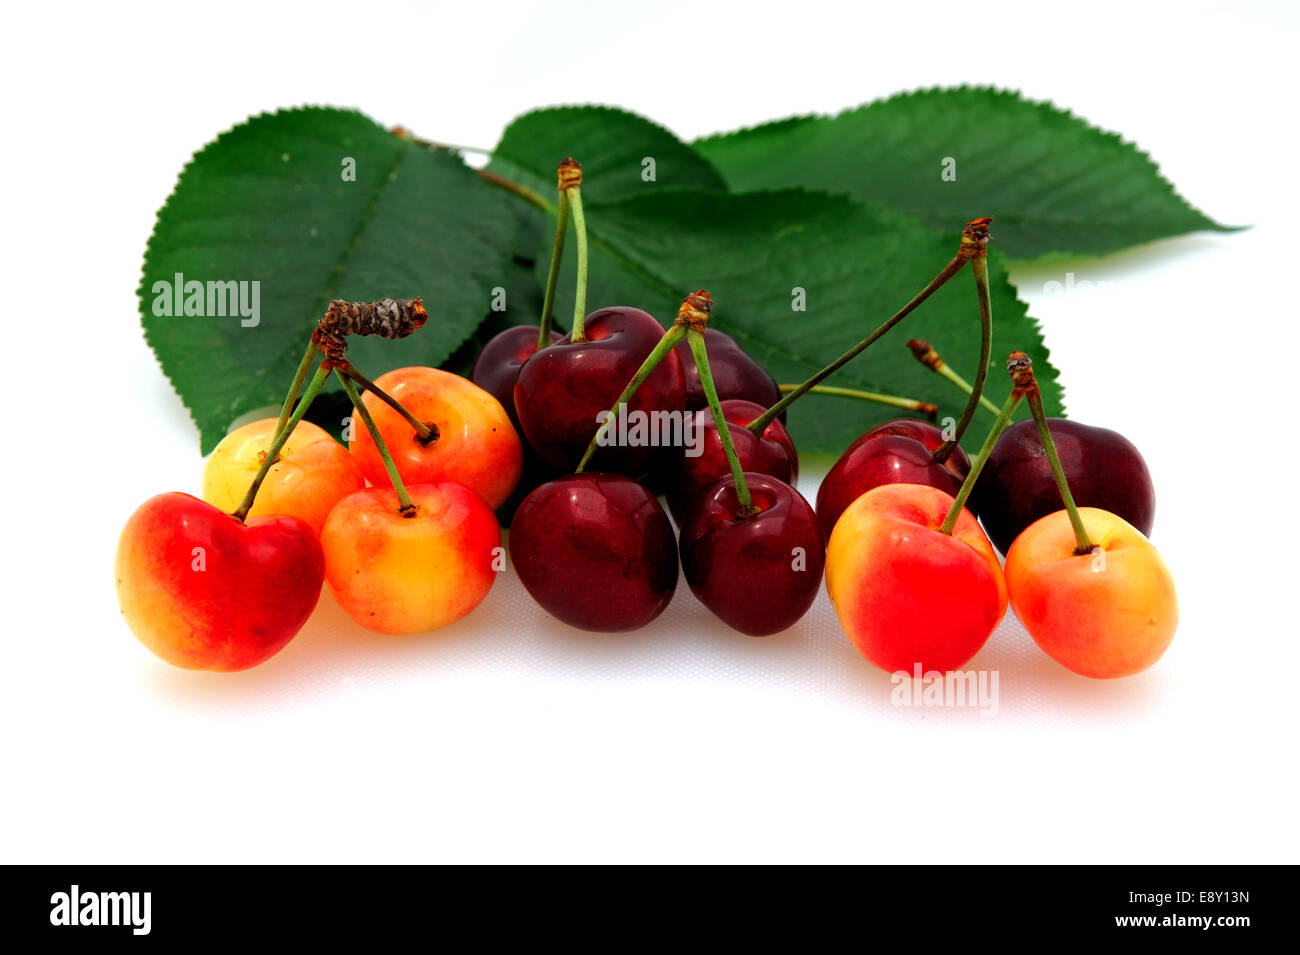 Bing And Rainier Cherries Stock Photo